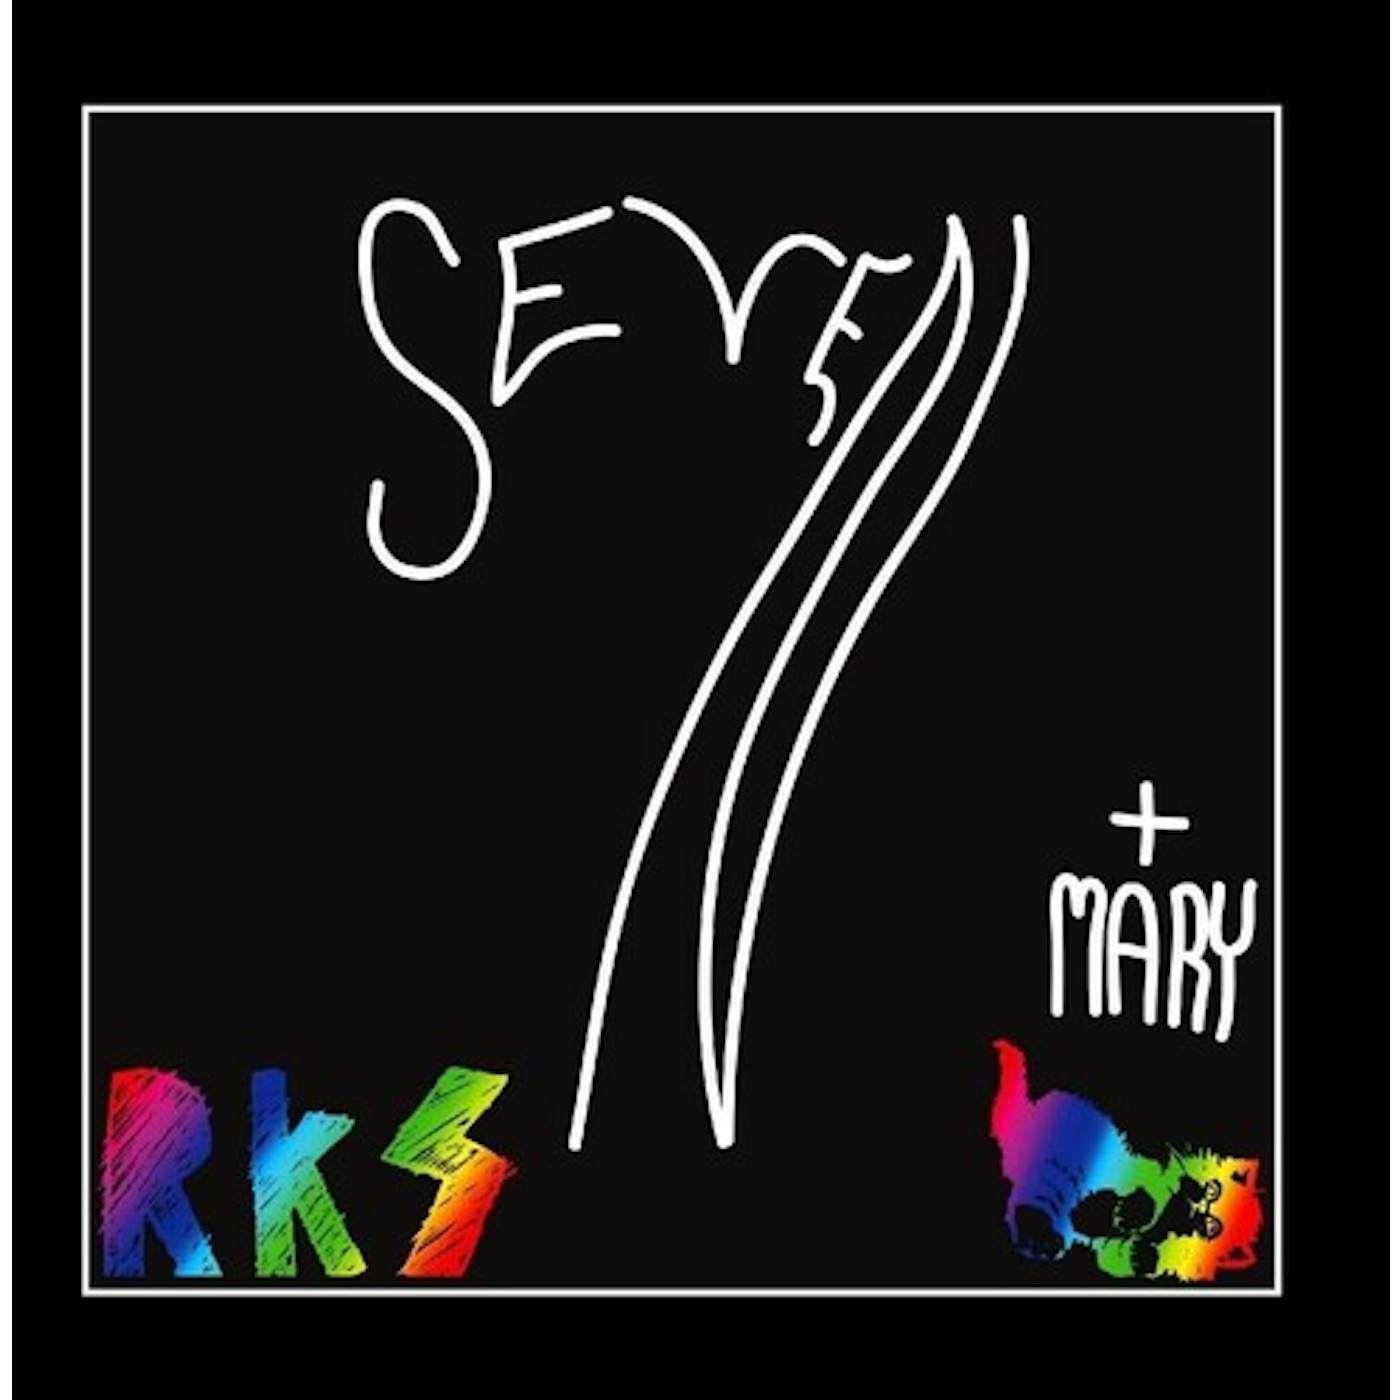 Rainbow Kitten Surprise SEVEN + MARY Vinyl Record